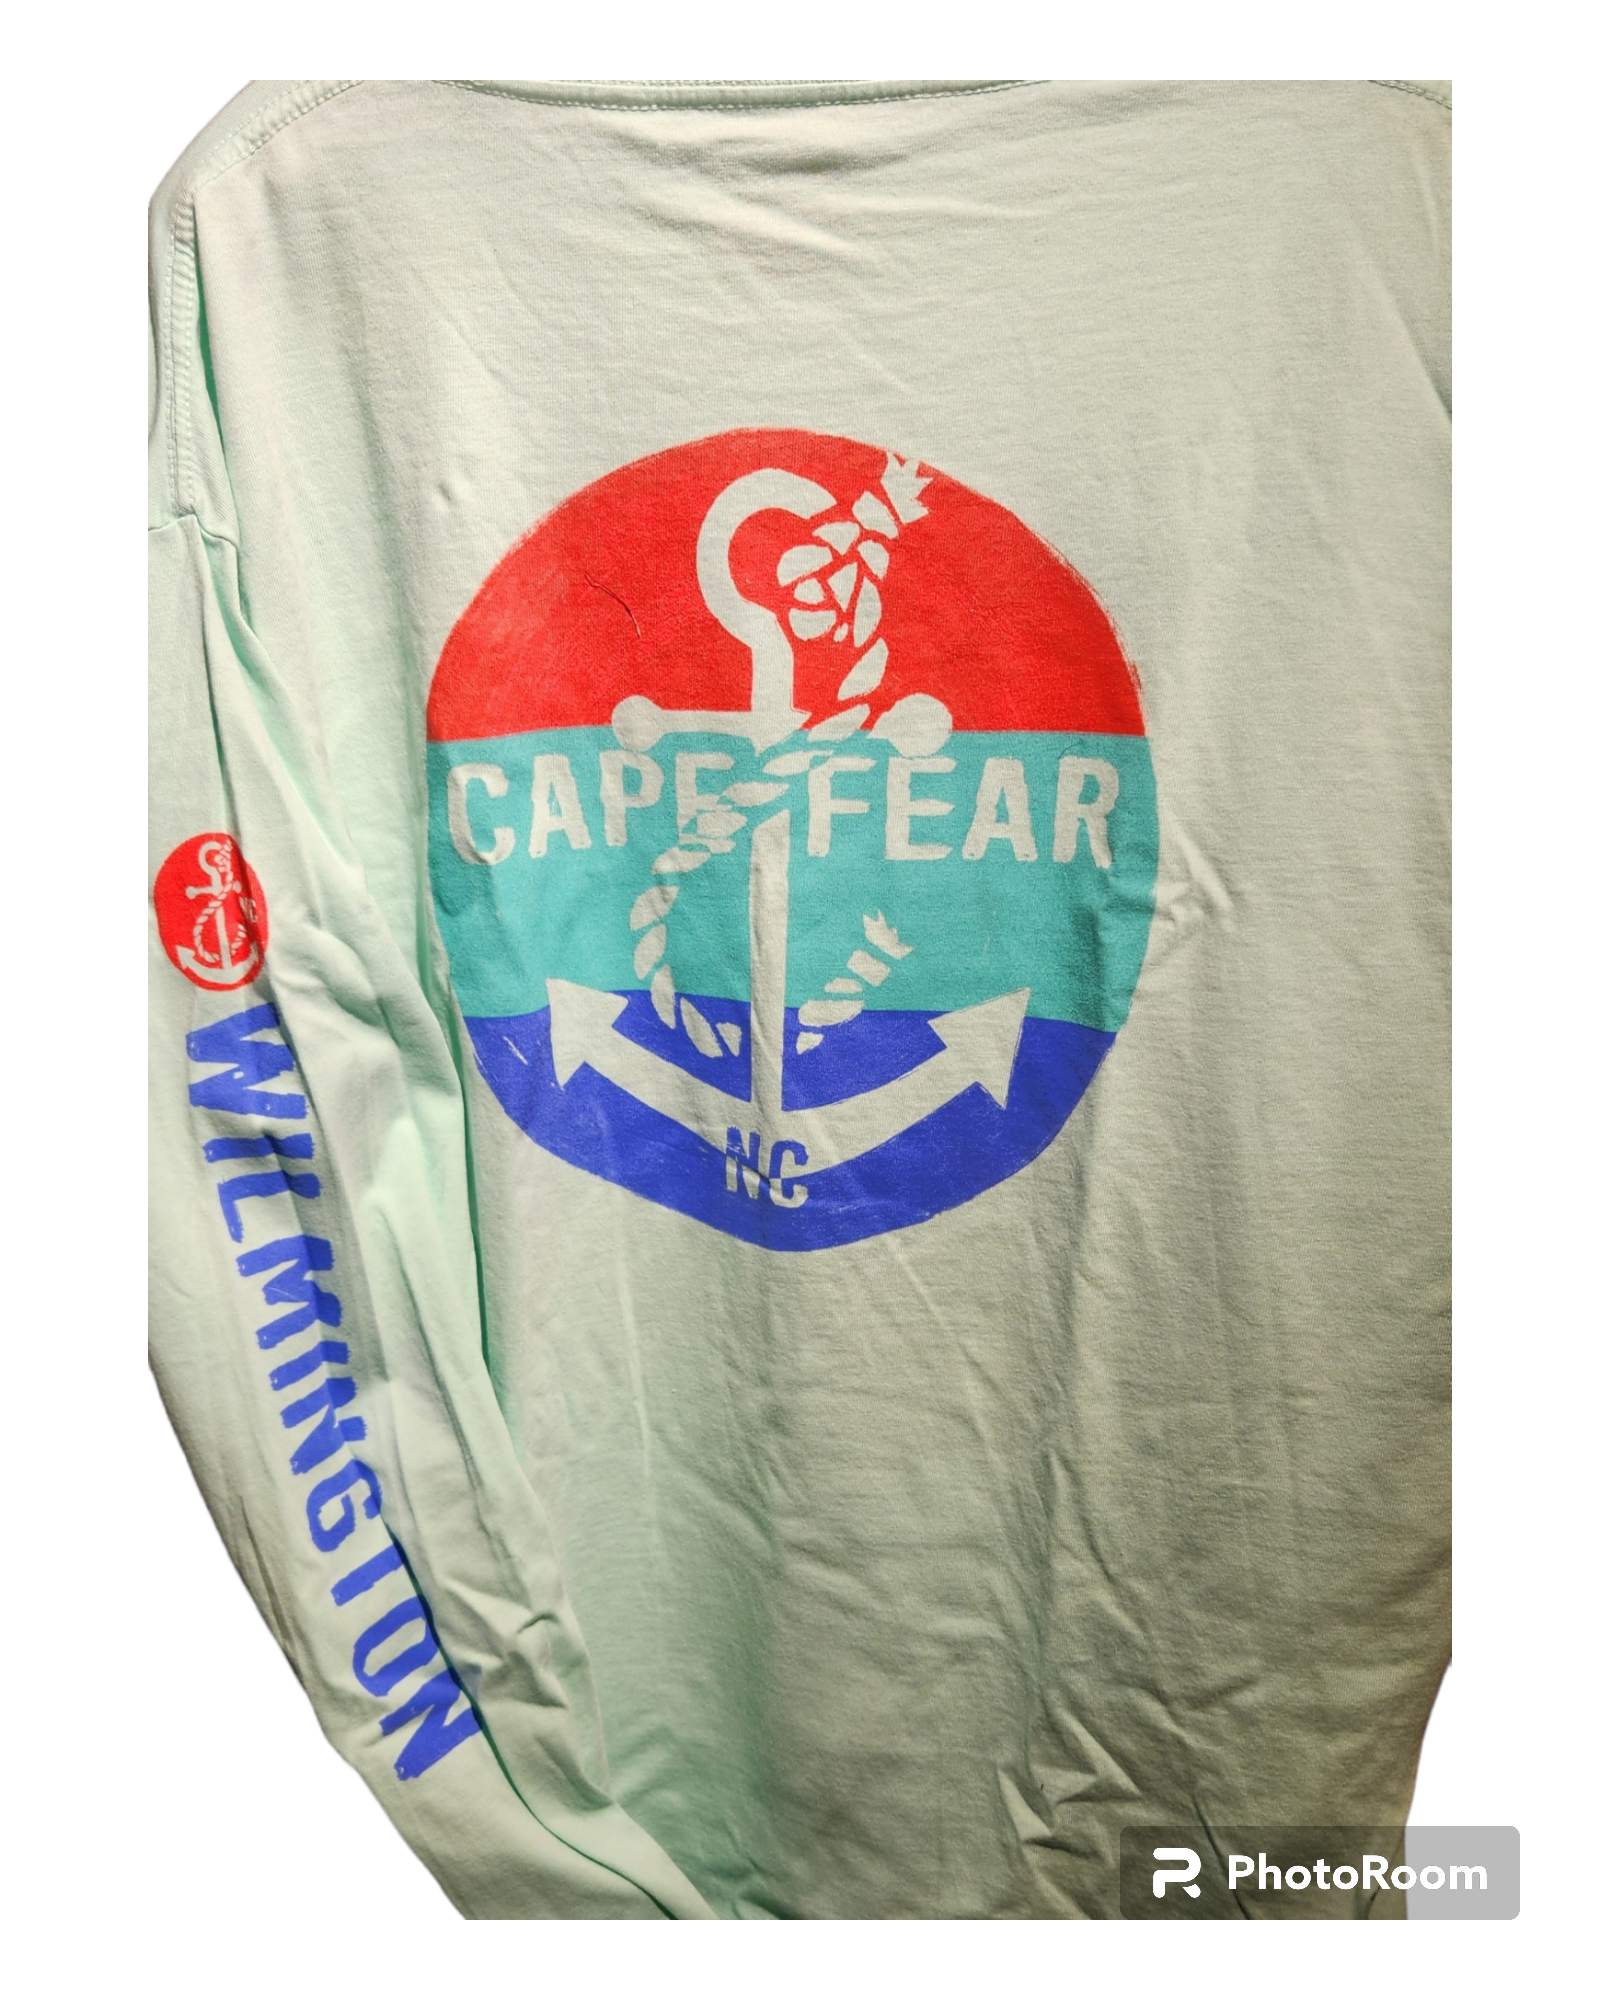 Cape Fear Anchor Long Sleeve Tee